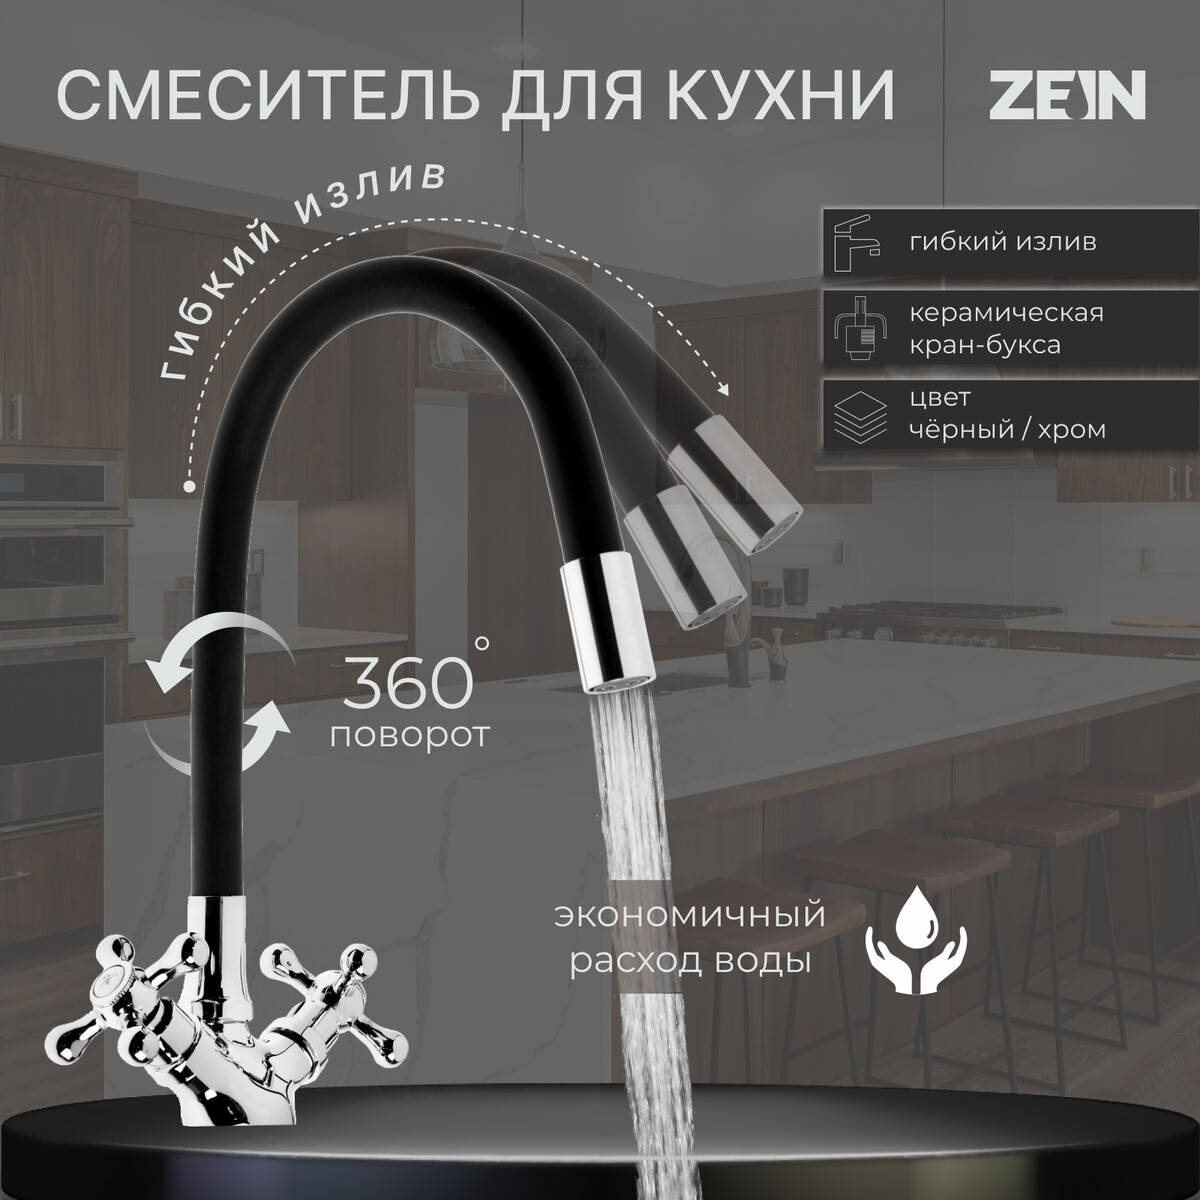 Cмеситель для кухни zein z2104, двухвентильный, силиконовый излив, черный/хром